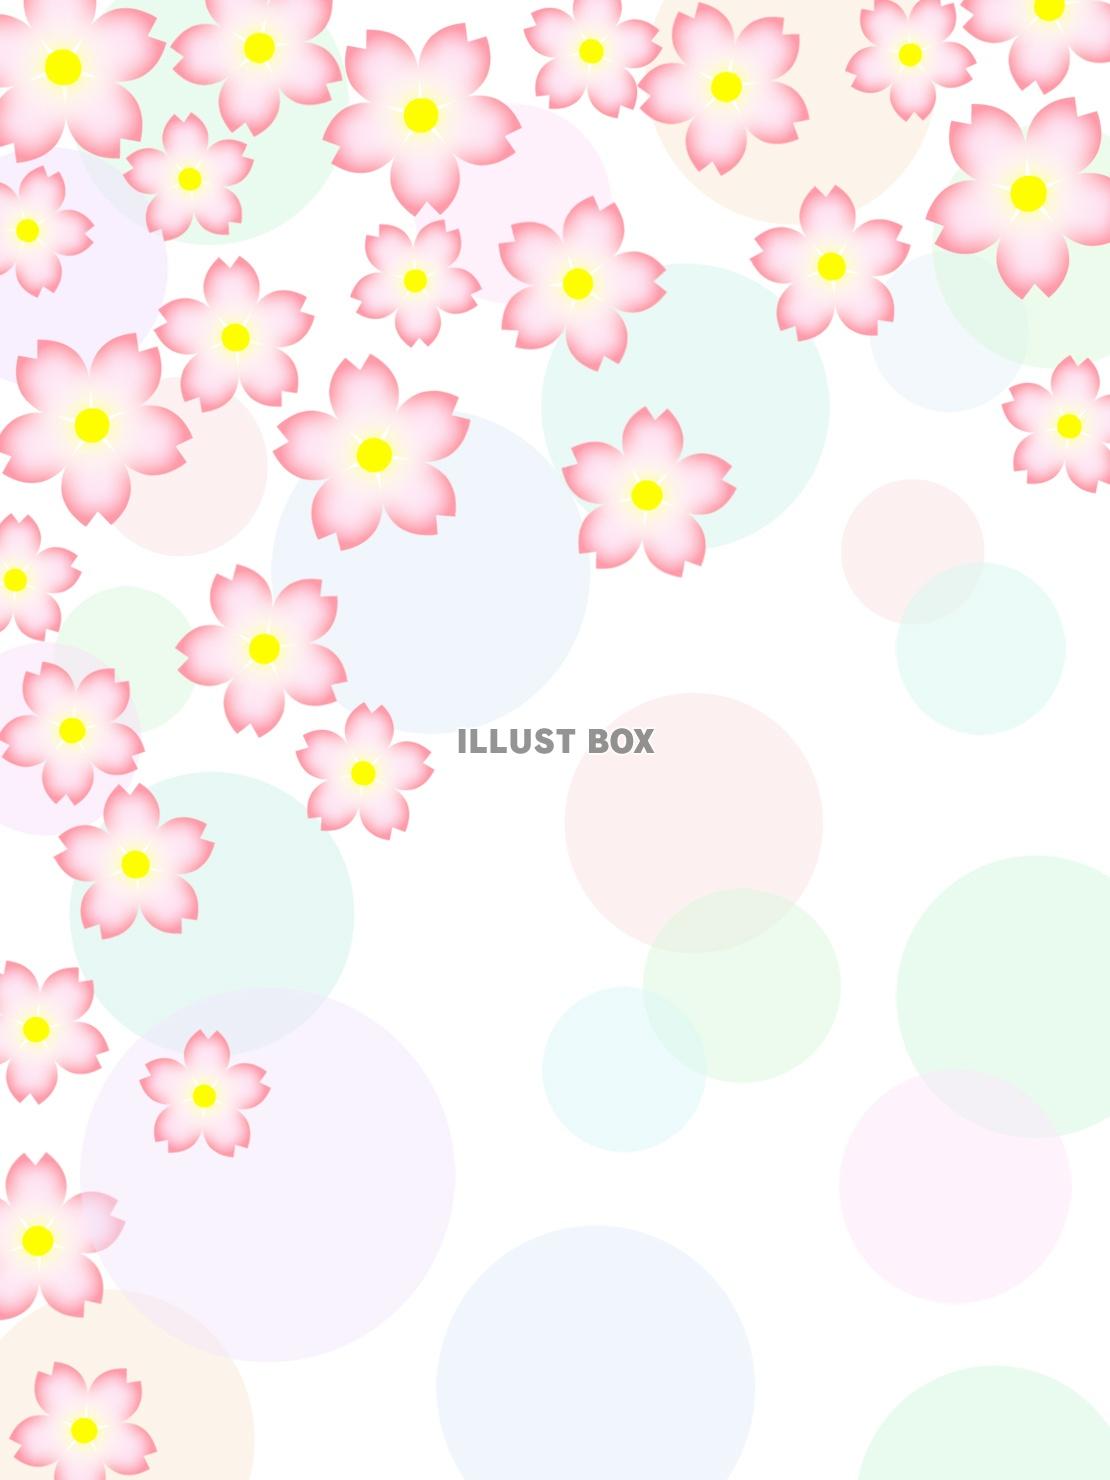 無料イラスト 桜の花柄と水玉模様の壁紙背景素材イラスト